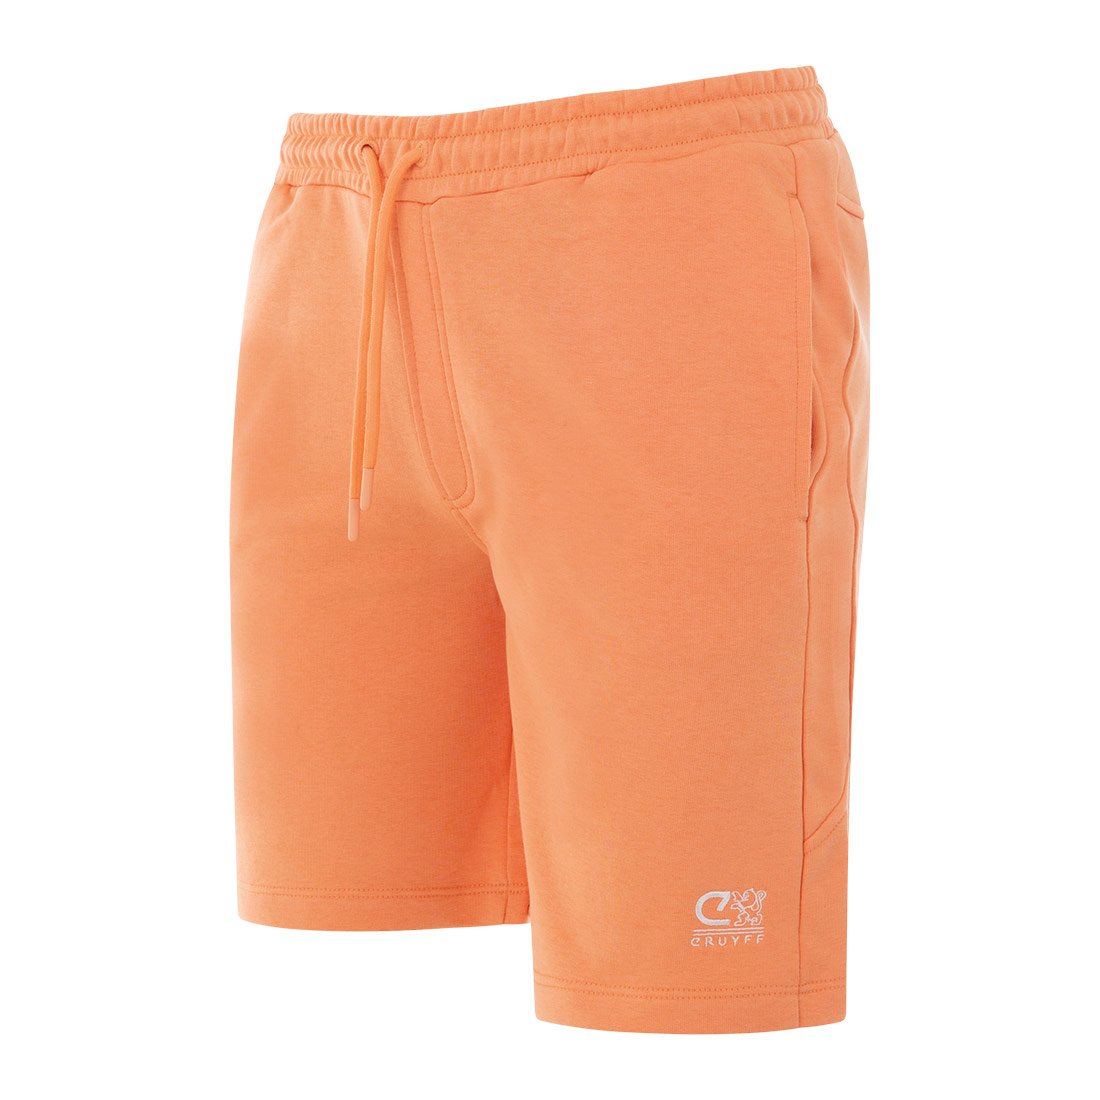 Cruyff energizedshort in de kleur oranje.